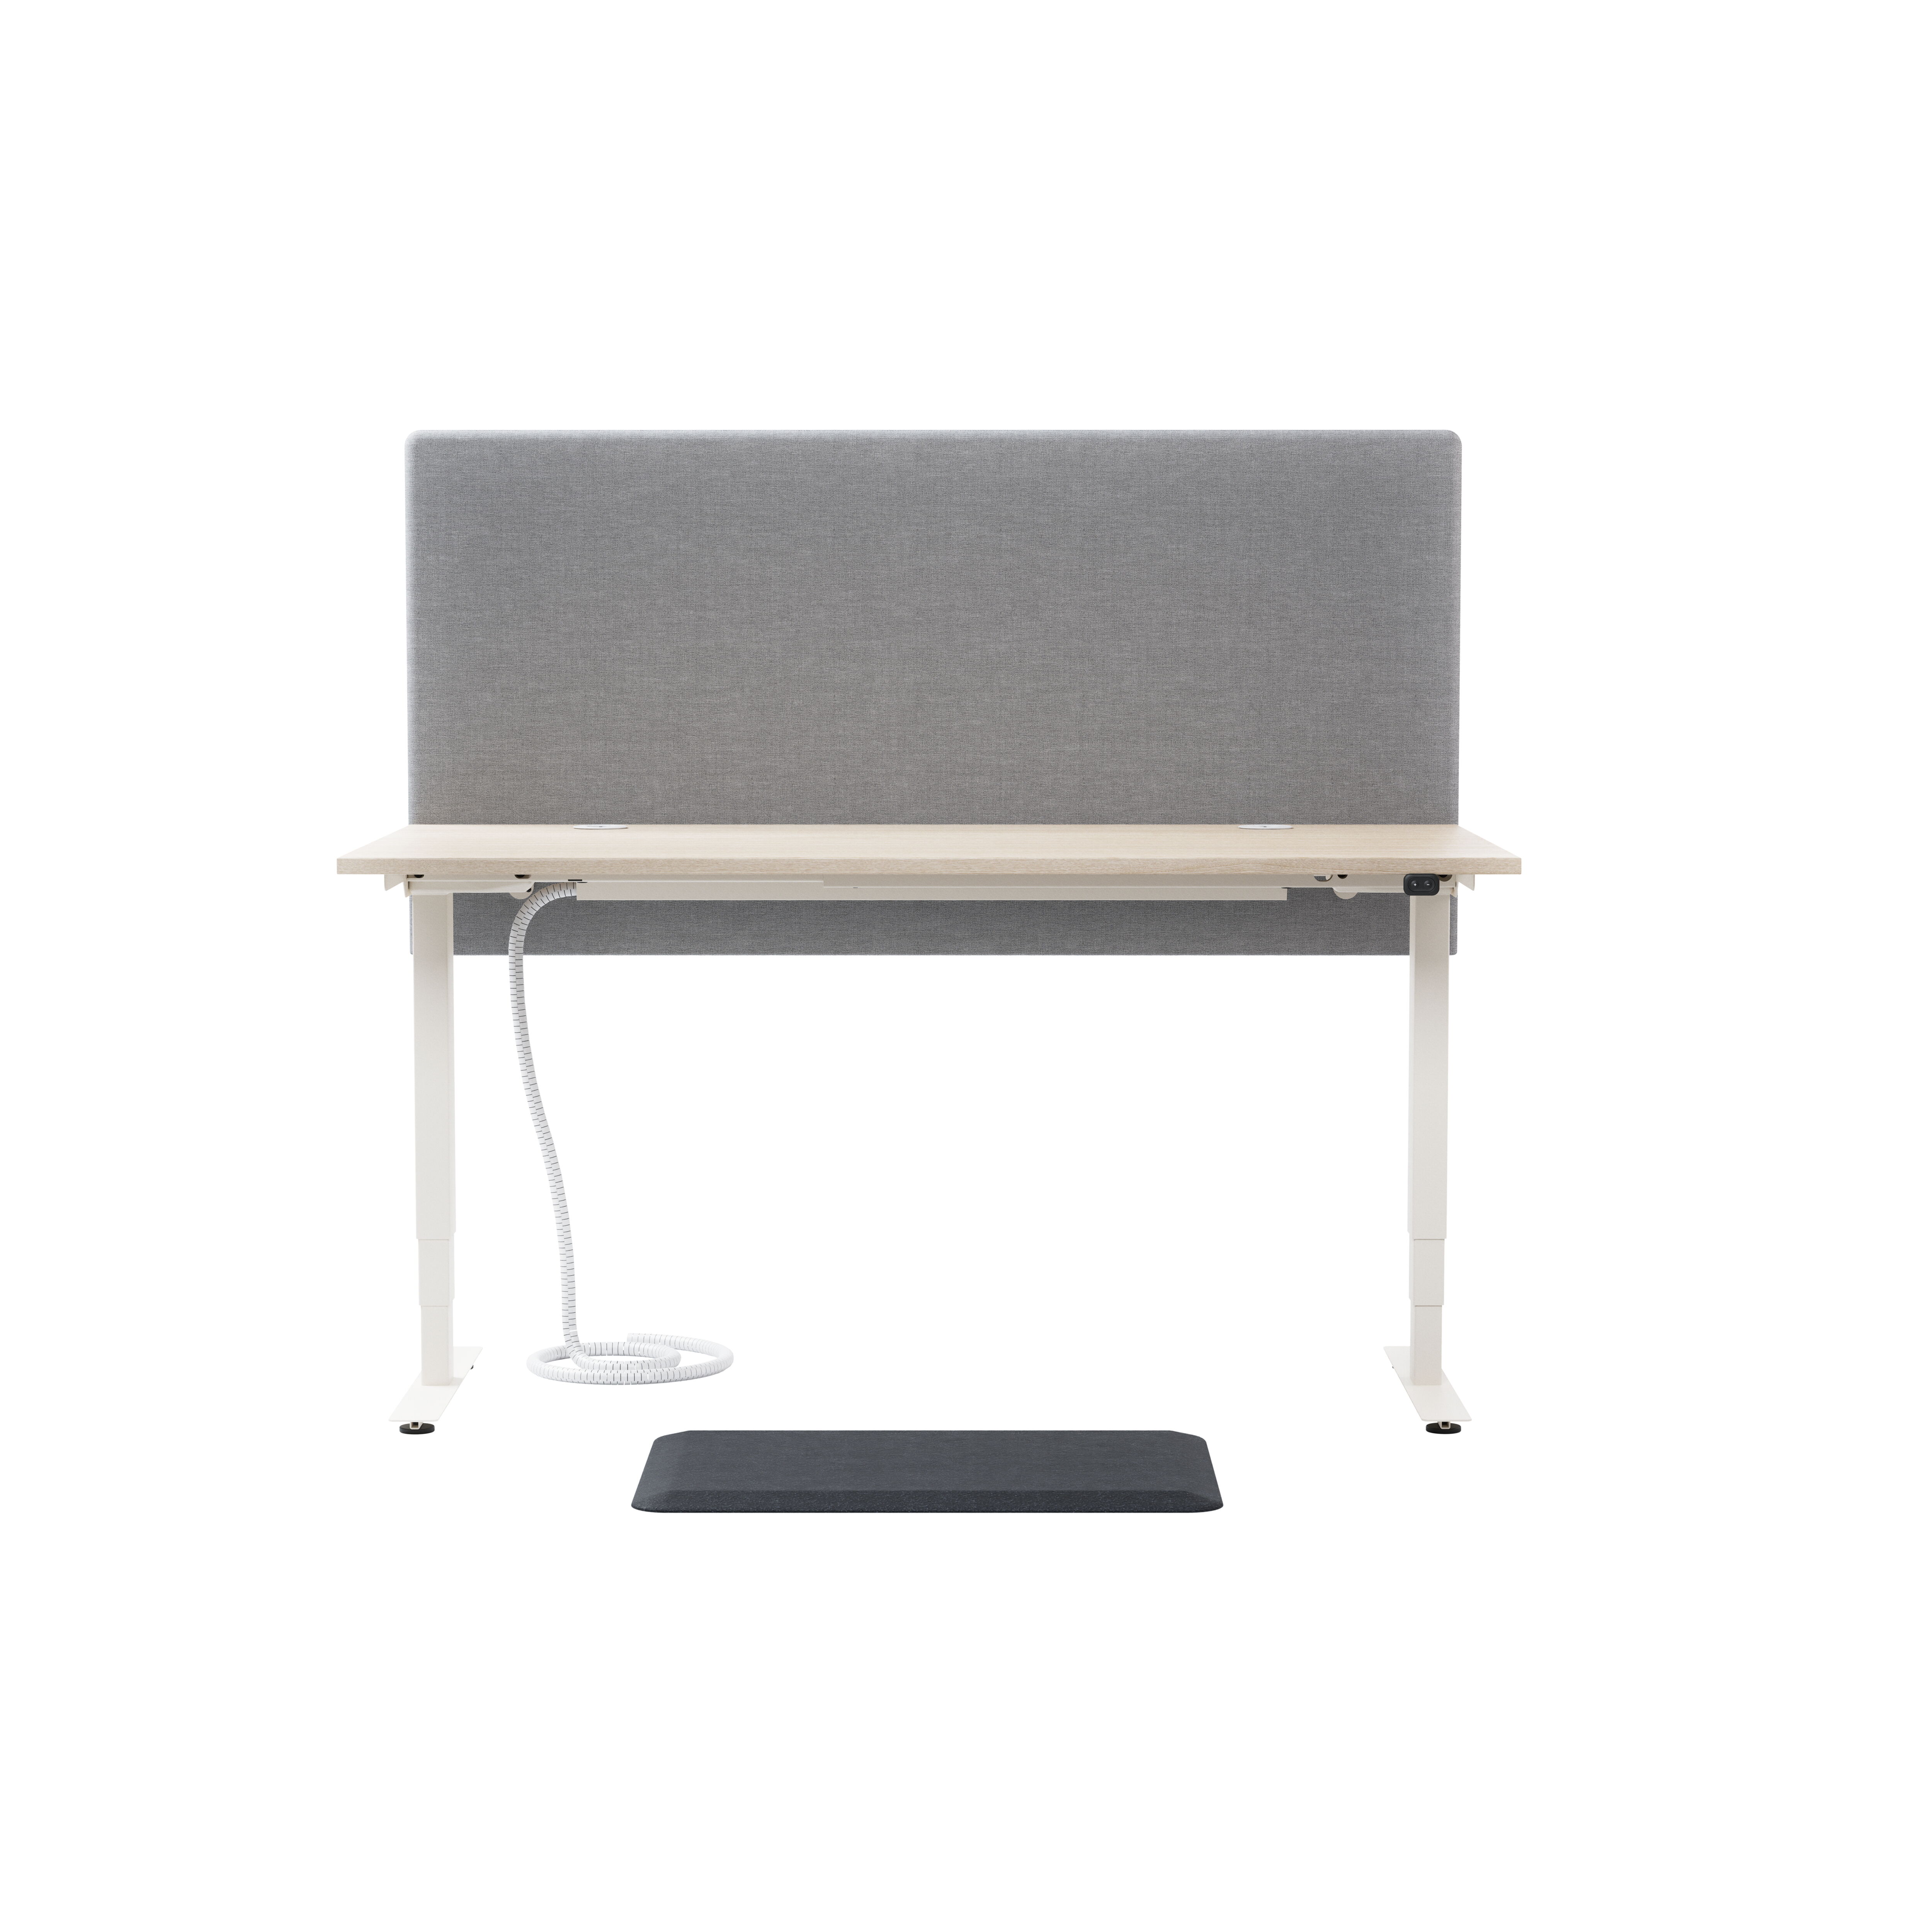 Izi Pro S Desk, sit/stand product image 1